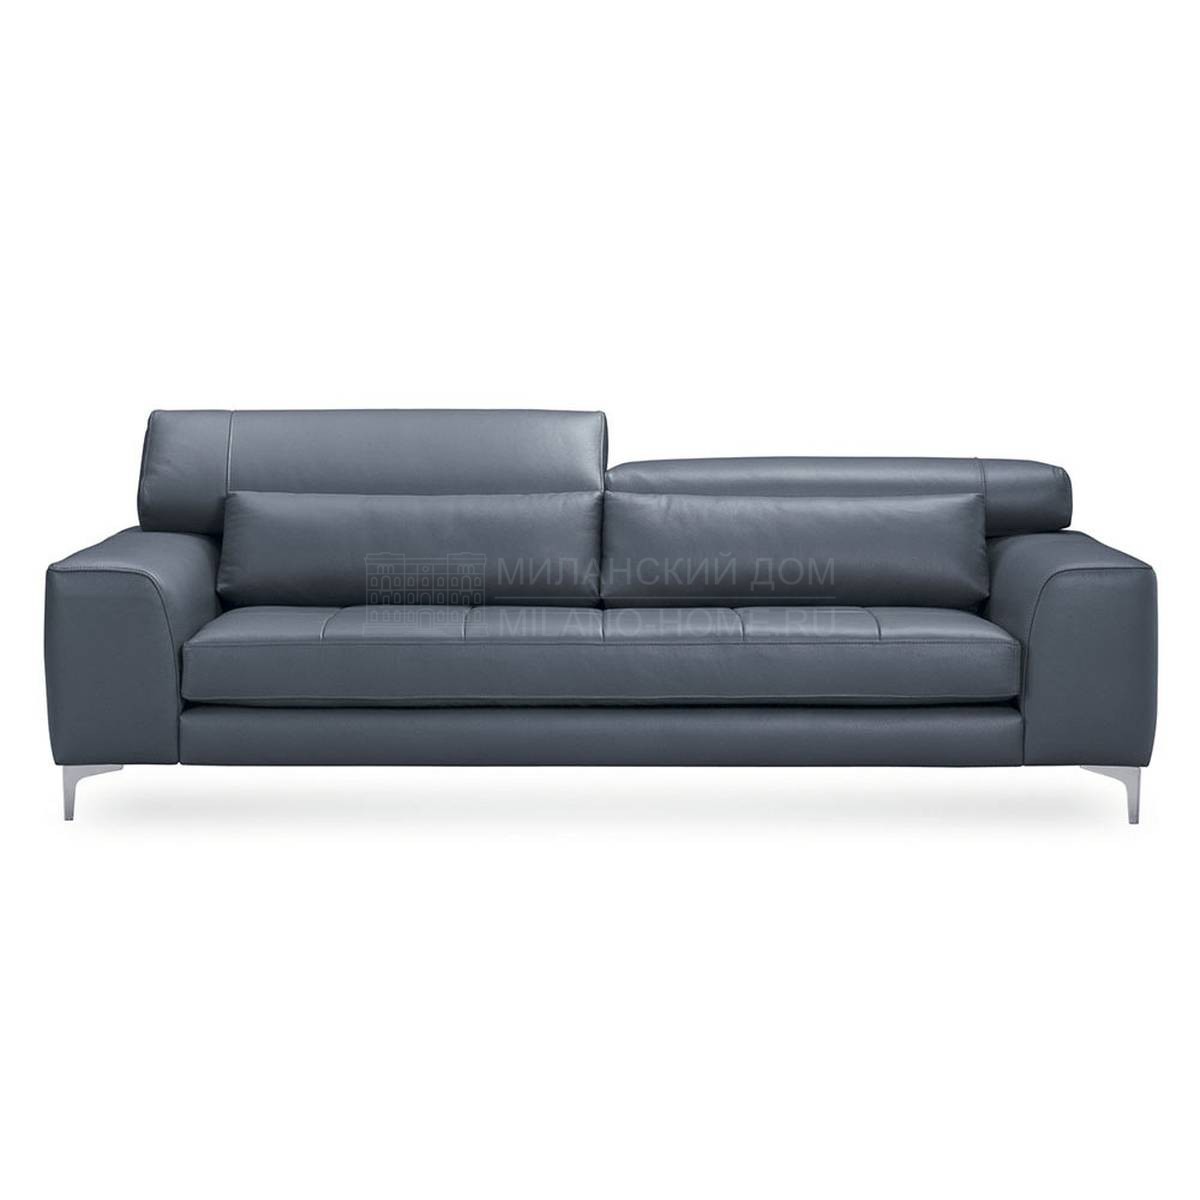 Прямой диван Ergo/sofa из Испании фабрики MANUEL LARRAGA